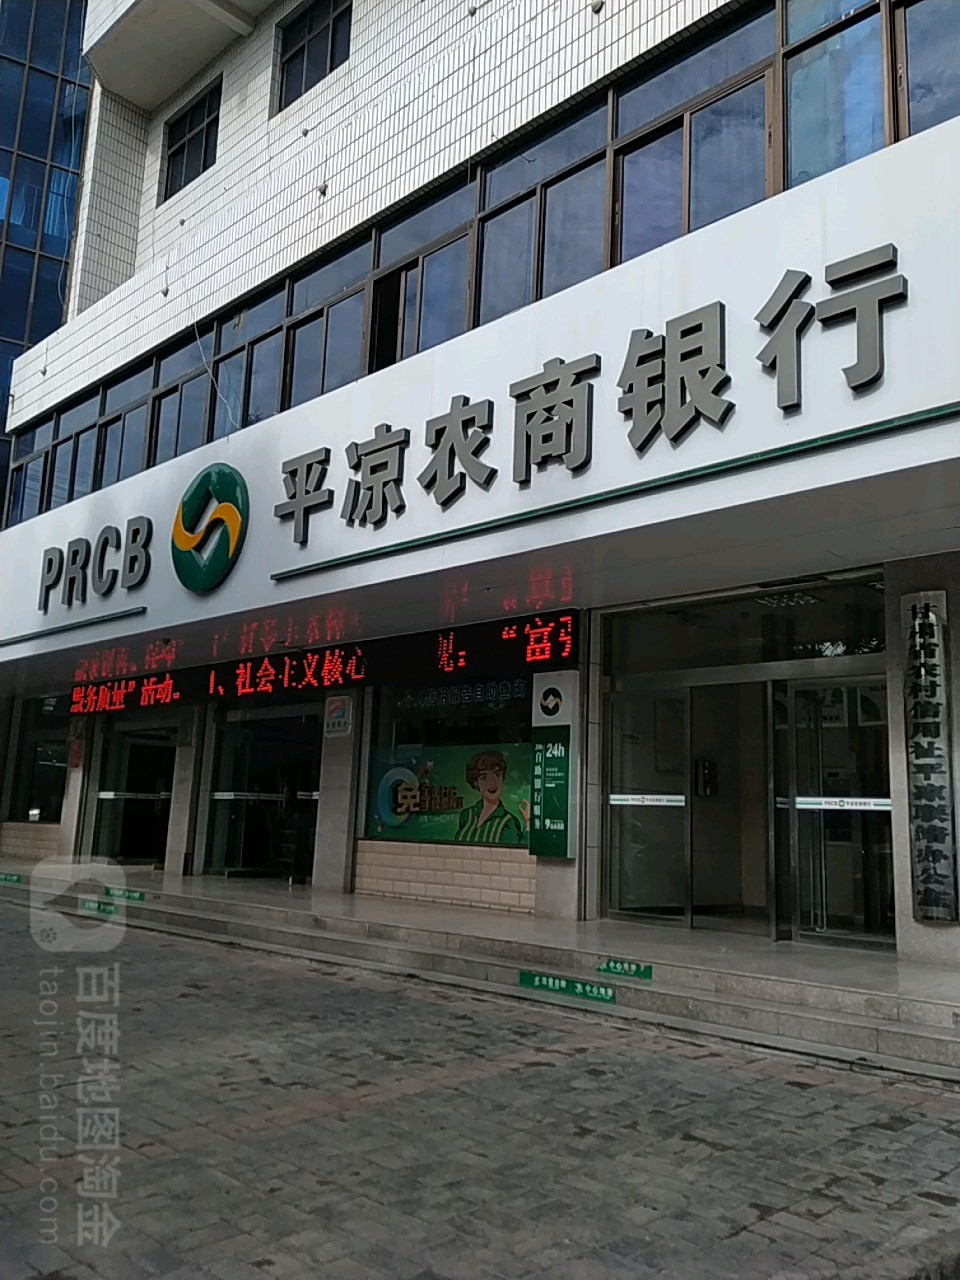 平涼農村商業銀行股份有限公司24小時自助銀行